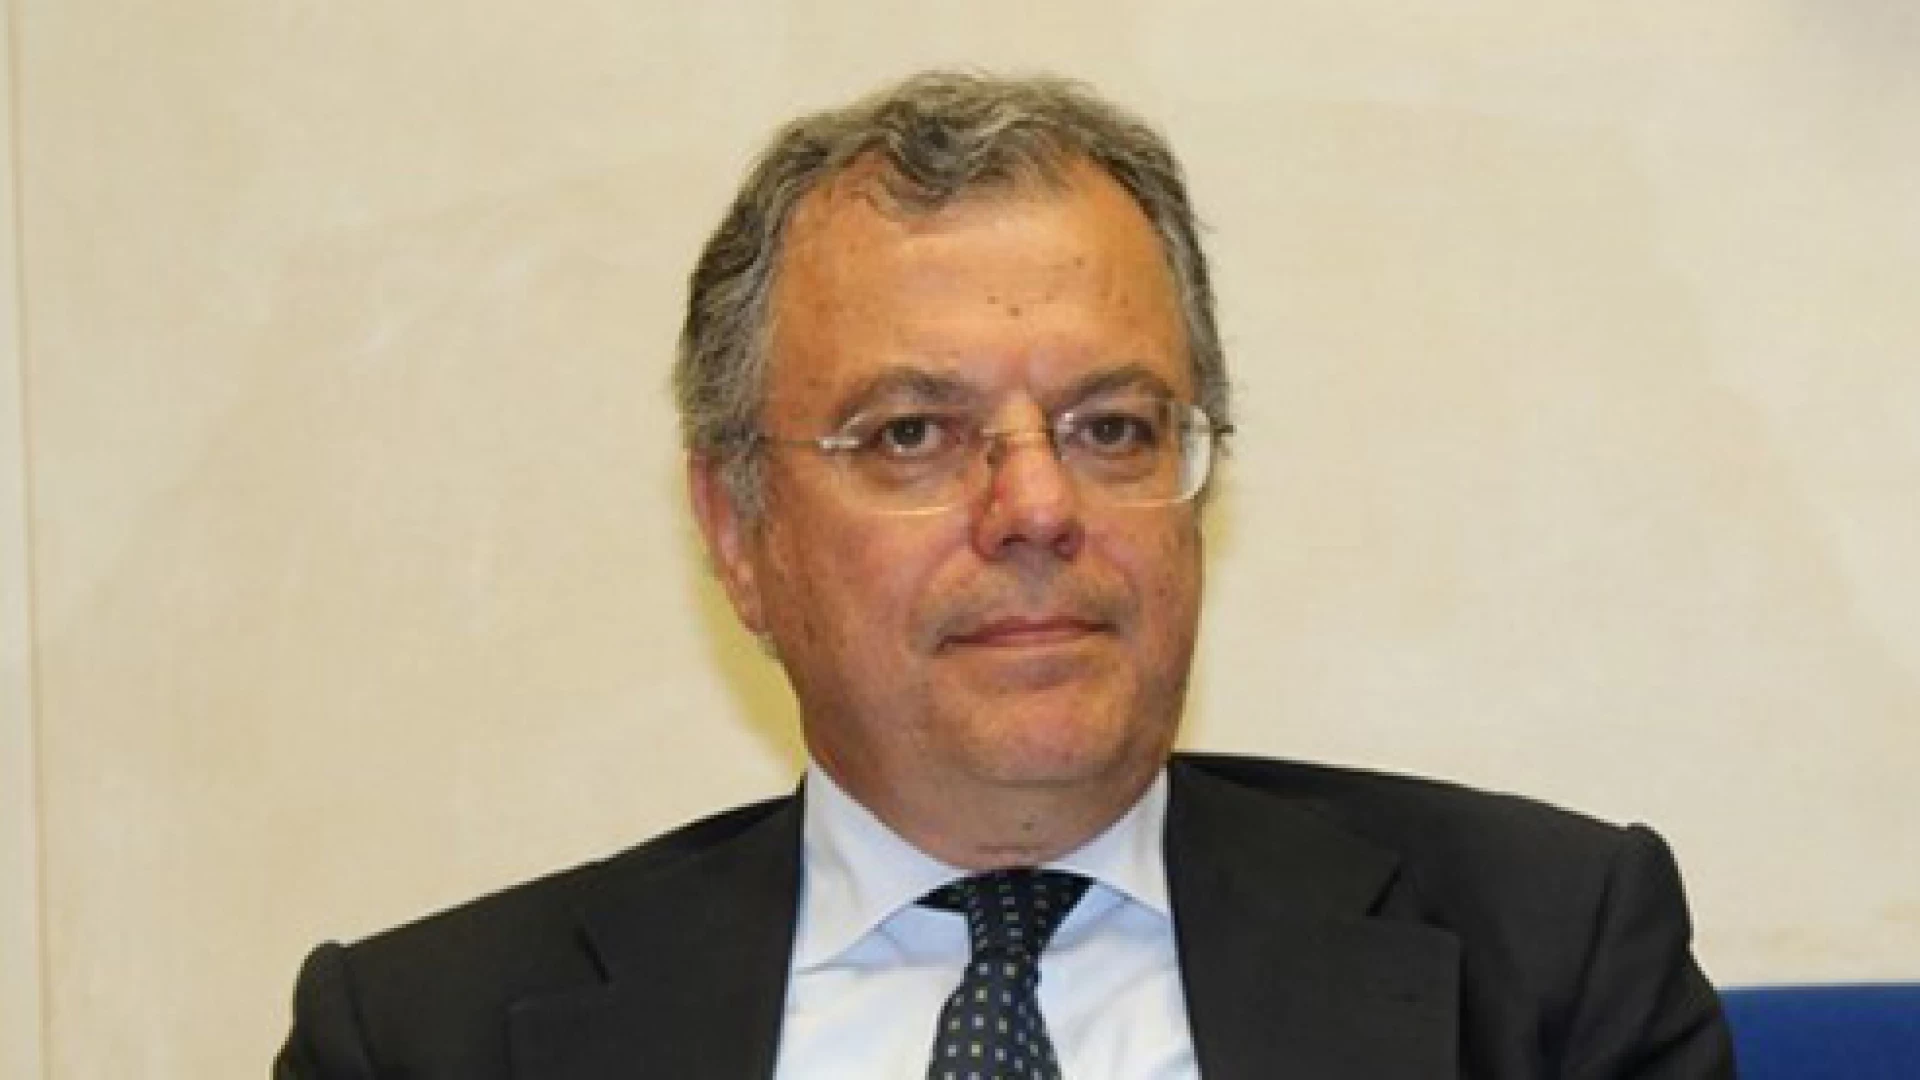 Gestione e rifiuti, Vittorio Nola (M5S): “Giunta e maggioranza regionale abbandonano la provincia di Isernia”.